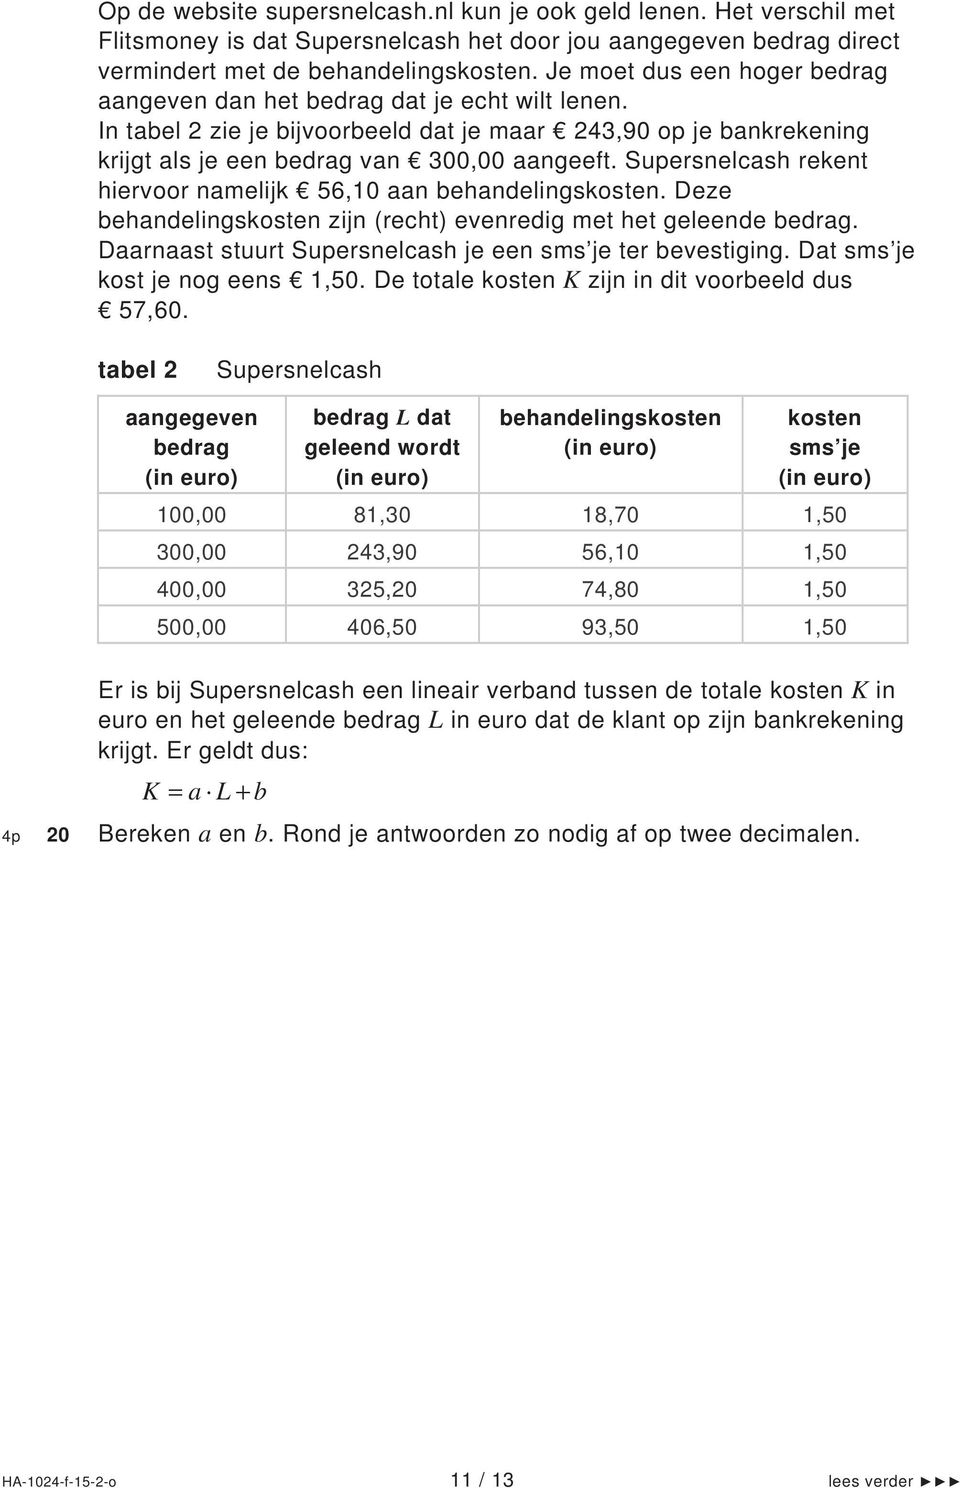 Supersnelcash rekent hiervoor namelijk 56,10 aan behandelingskosten. Deze behandelingskosten zijn (recht) evenredig met het geleende bedrag.